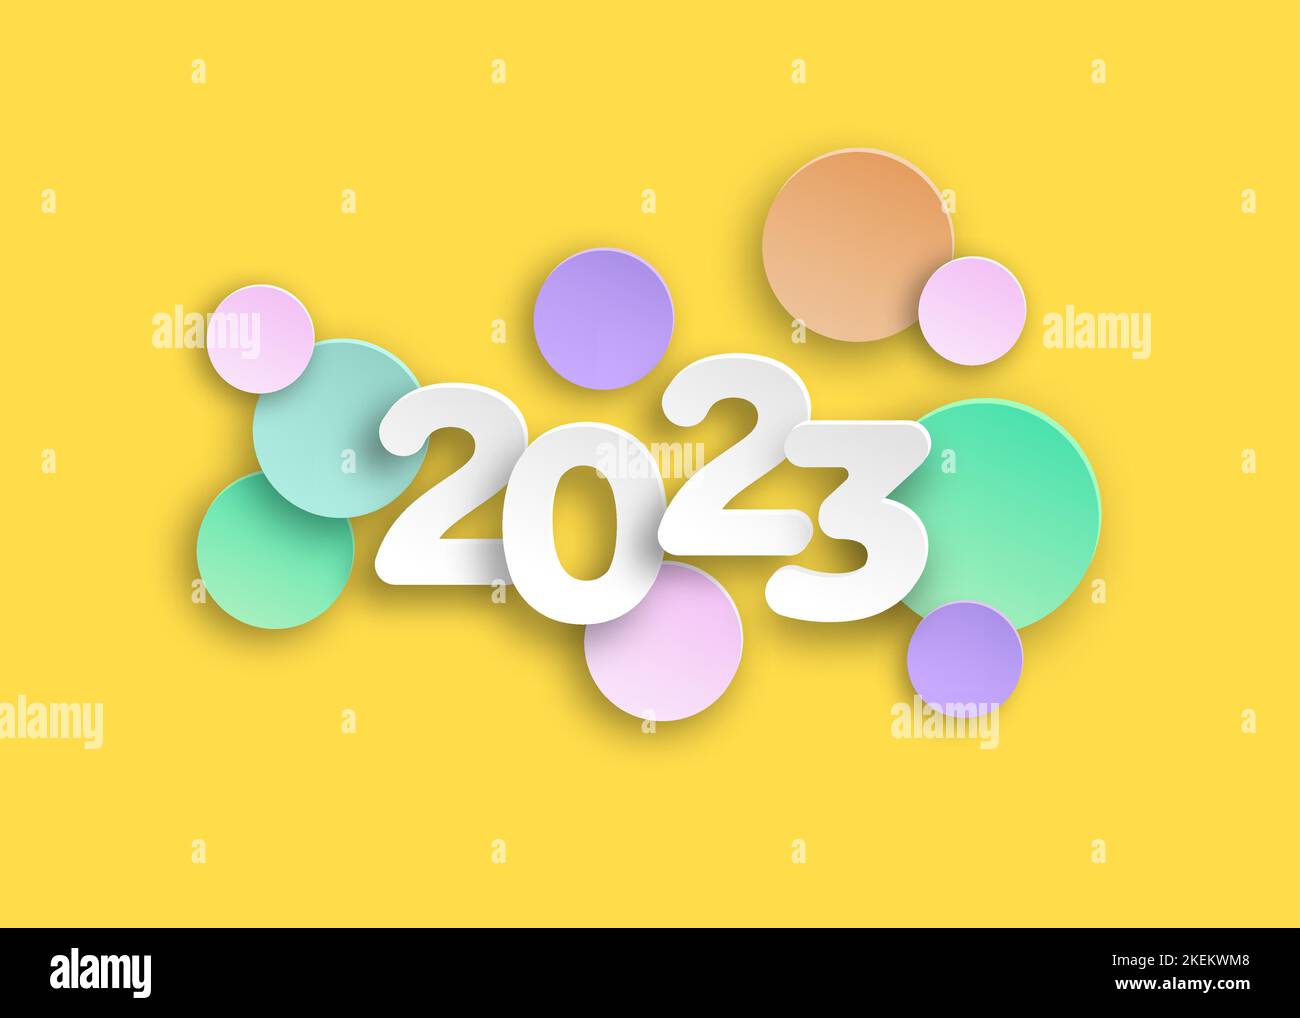 Neues Jahr 2023 Papier schneiden Zahlen in zarten Farben. Dekorative Grußkarte 2023 Frohes neues Jahr. Buntes Weihnachtsbanner, gelber Hintergrund Stock Vektor